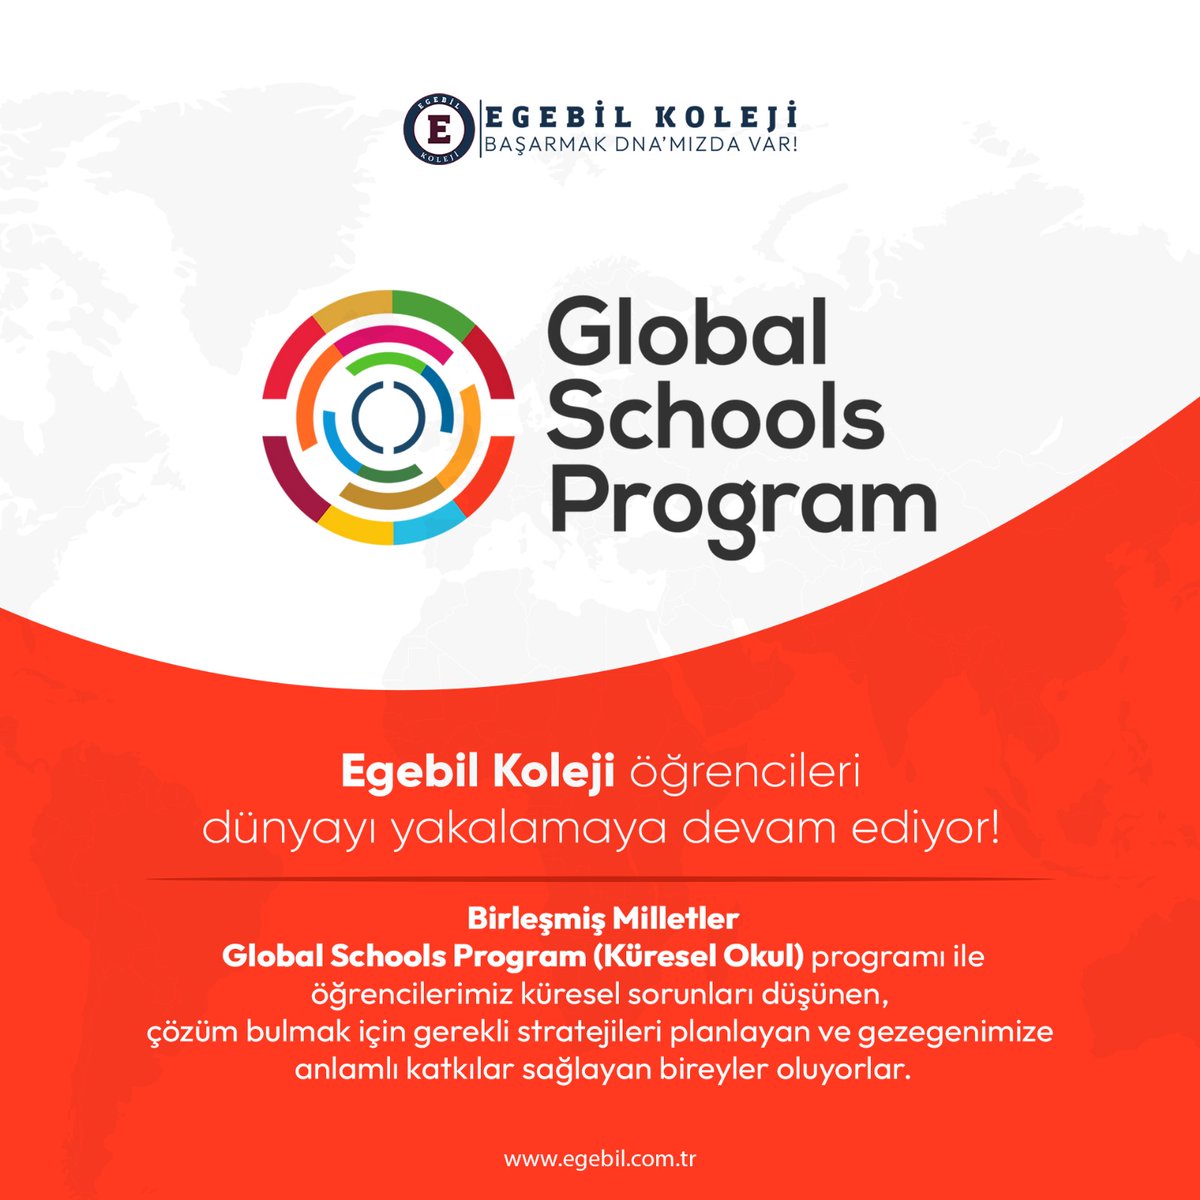 Egebil Kolejleri öğrencileri dünyaya açılmaya devam ediyor! Global Schools (Küresel Okul) sertifikamız ile öğrencilerimiz ülkemizin sınırlarını aşıp Dünyayı ilgilendiren projeler üretiyor.

#egebil #global #dünya #ingilizce #english #globalschools #eğitim #kolej